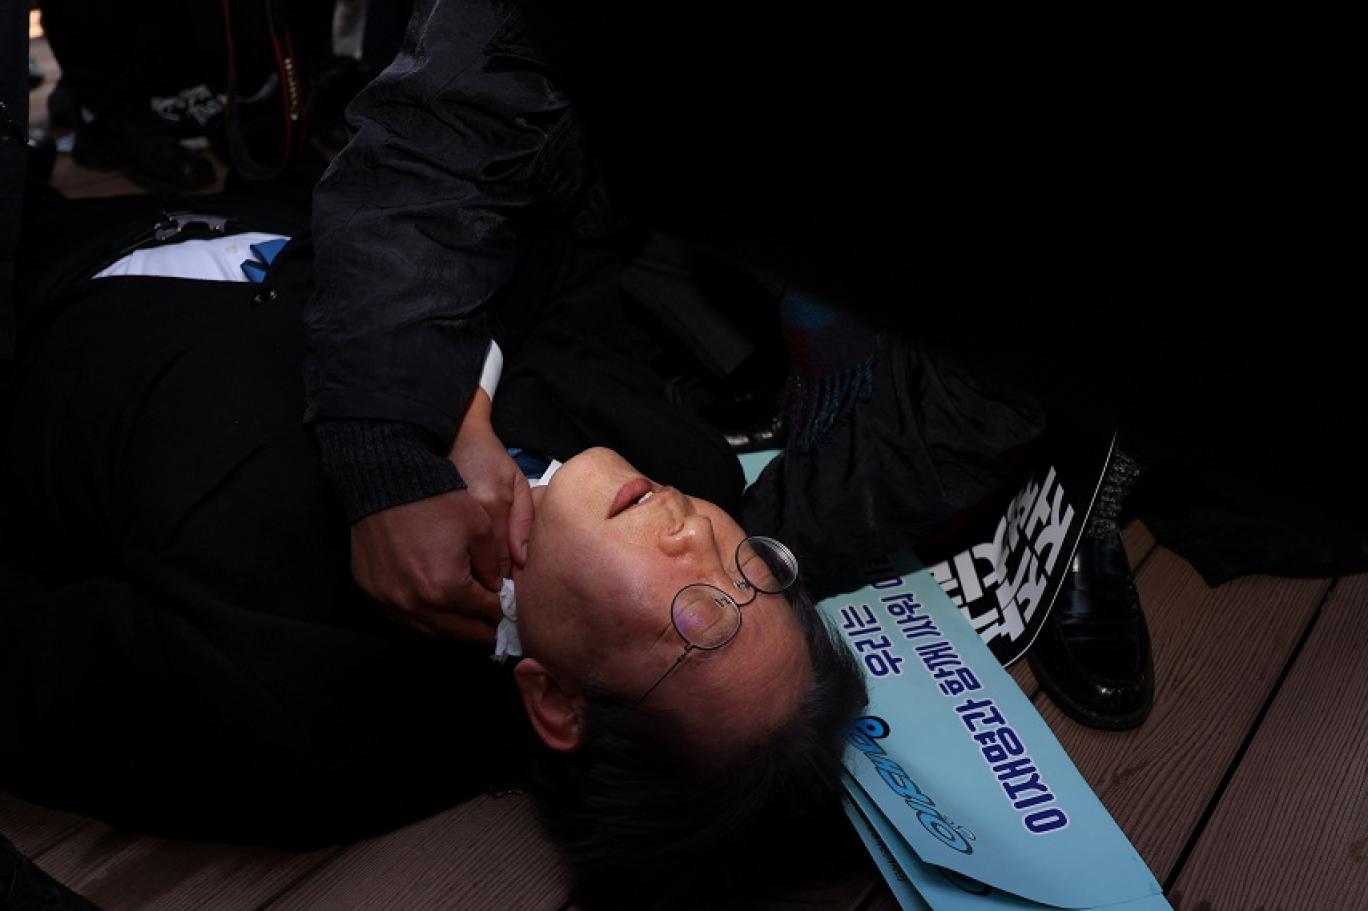 زعيم المعارضة الكورية الجنوبية يتعرض للطعن في رقبته